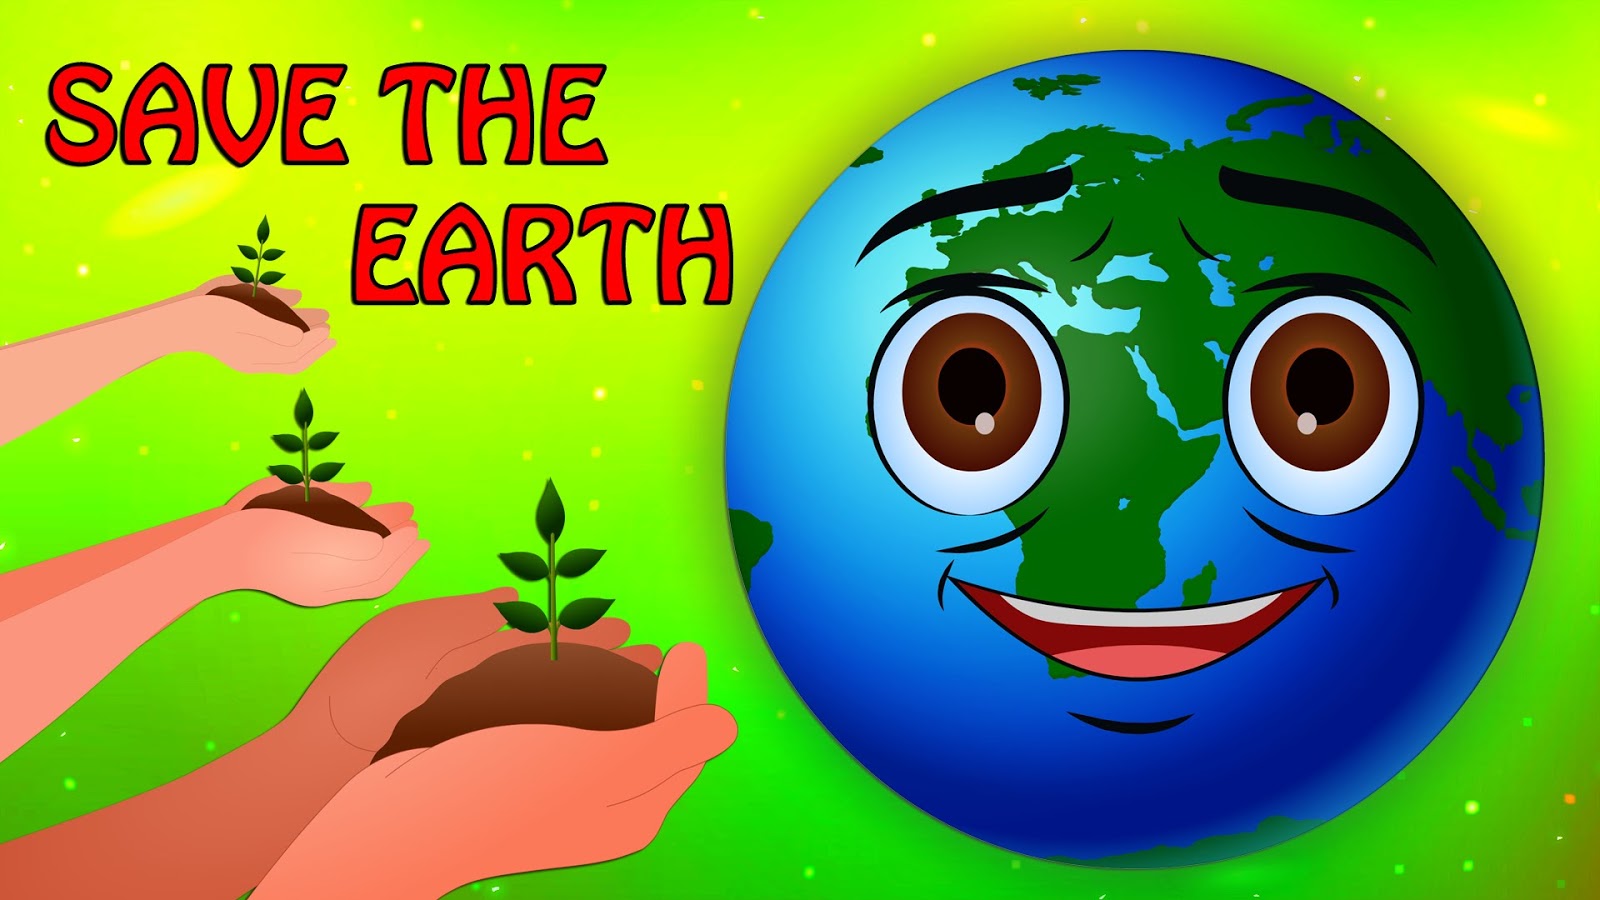 saveearth: save earth